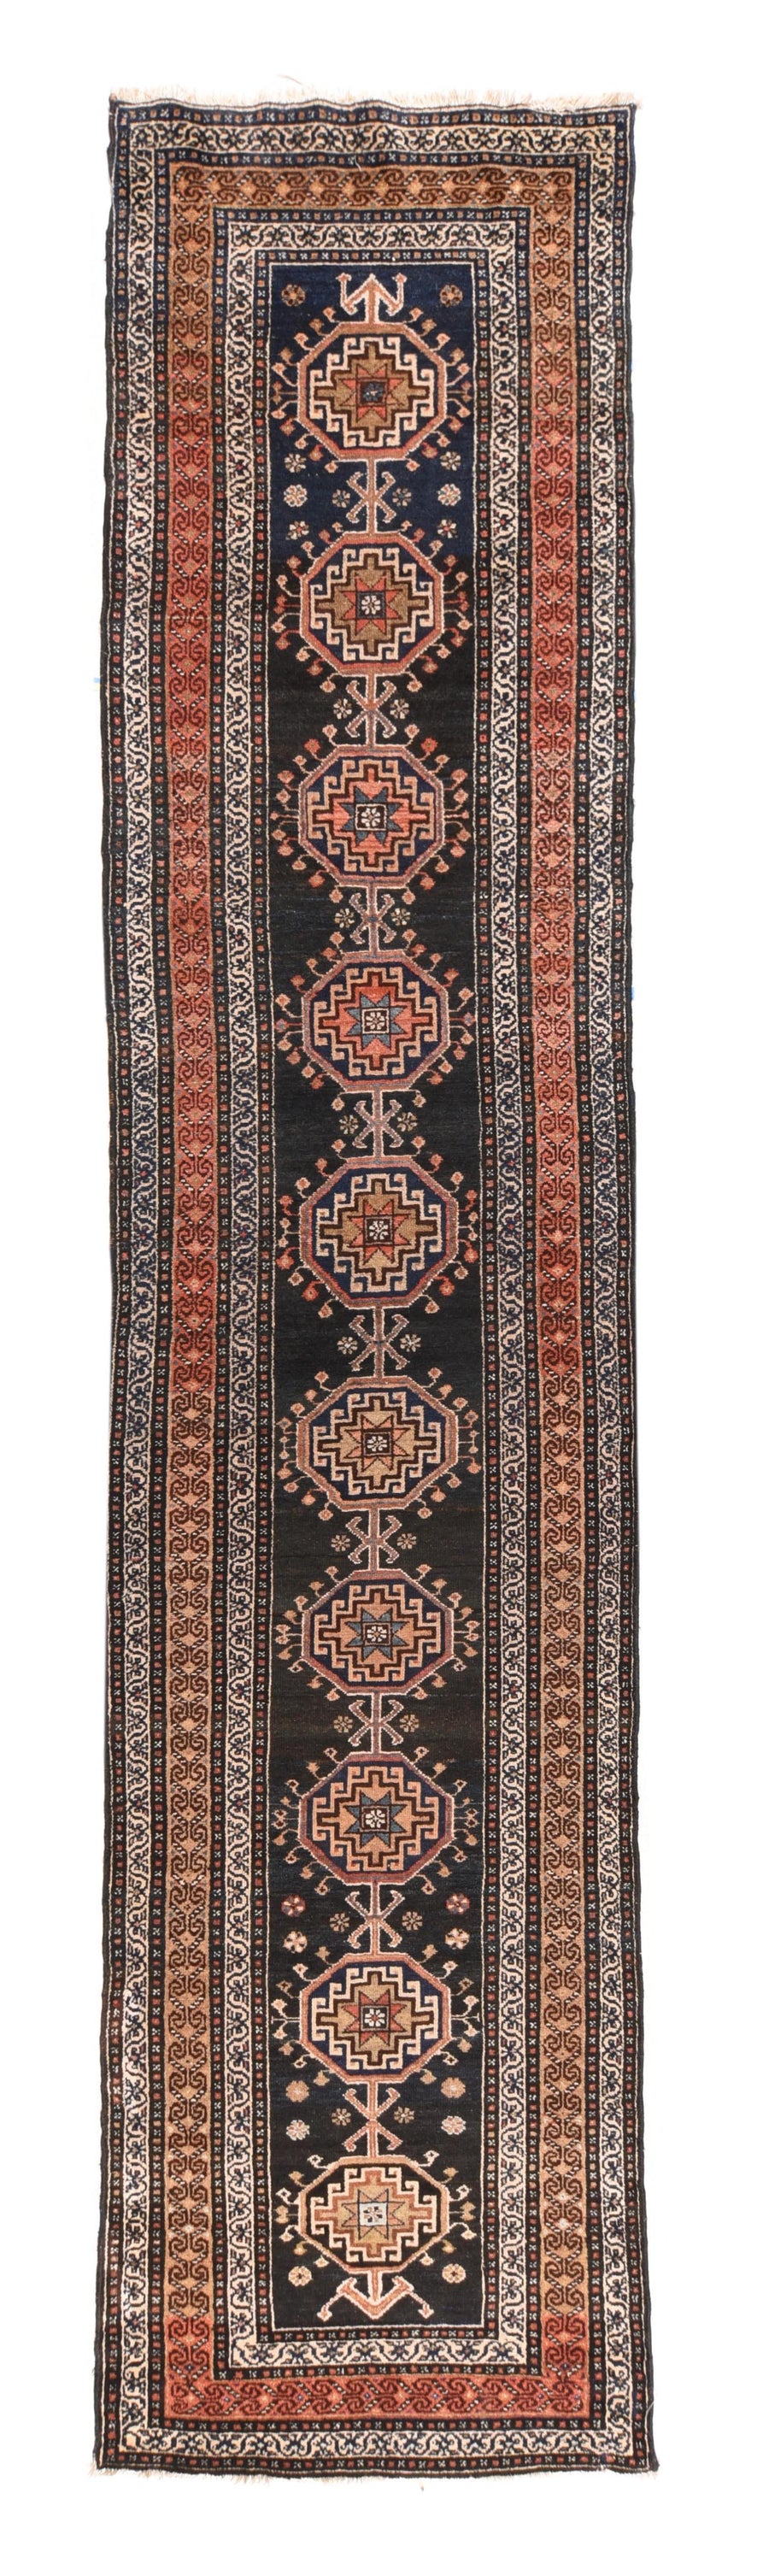 Antique Qurdish Rug 3'3'' x 13'5''